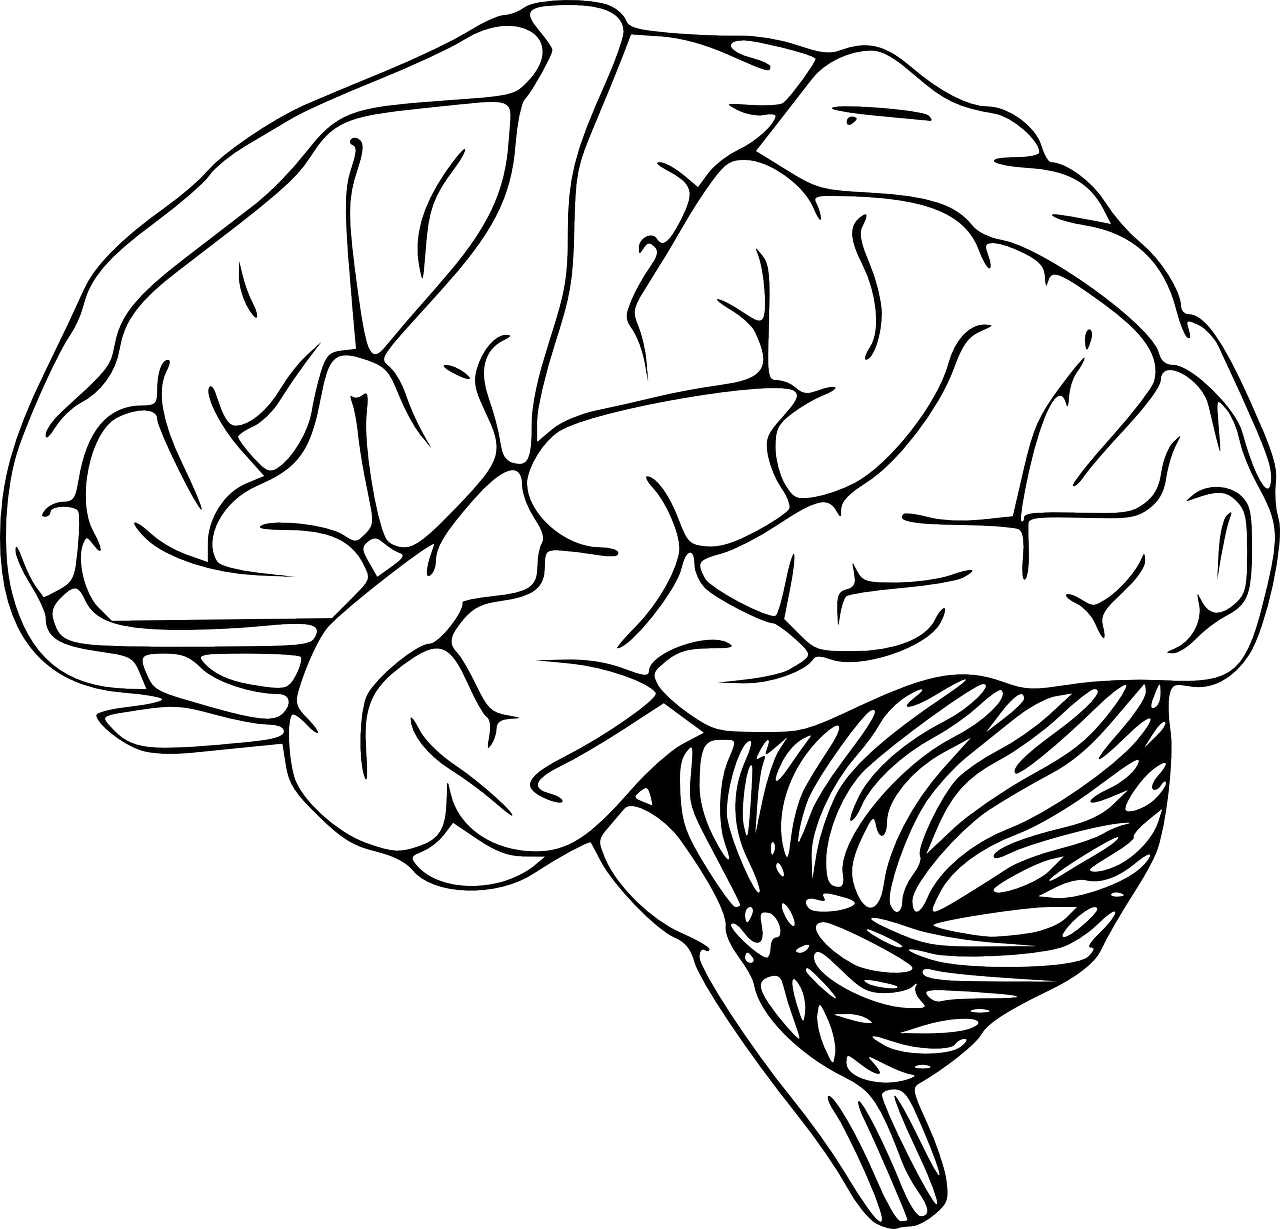 Smegenys, Žmogaus Smegenys, Anatomija, Mokslas, Biologija, Galvos Smegenys, Organas, Žievė, Smegenėlė, Anatominis